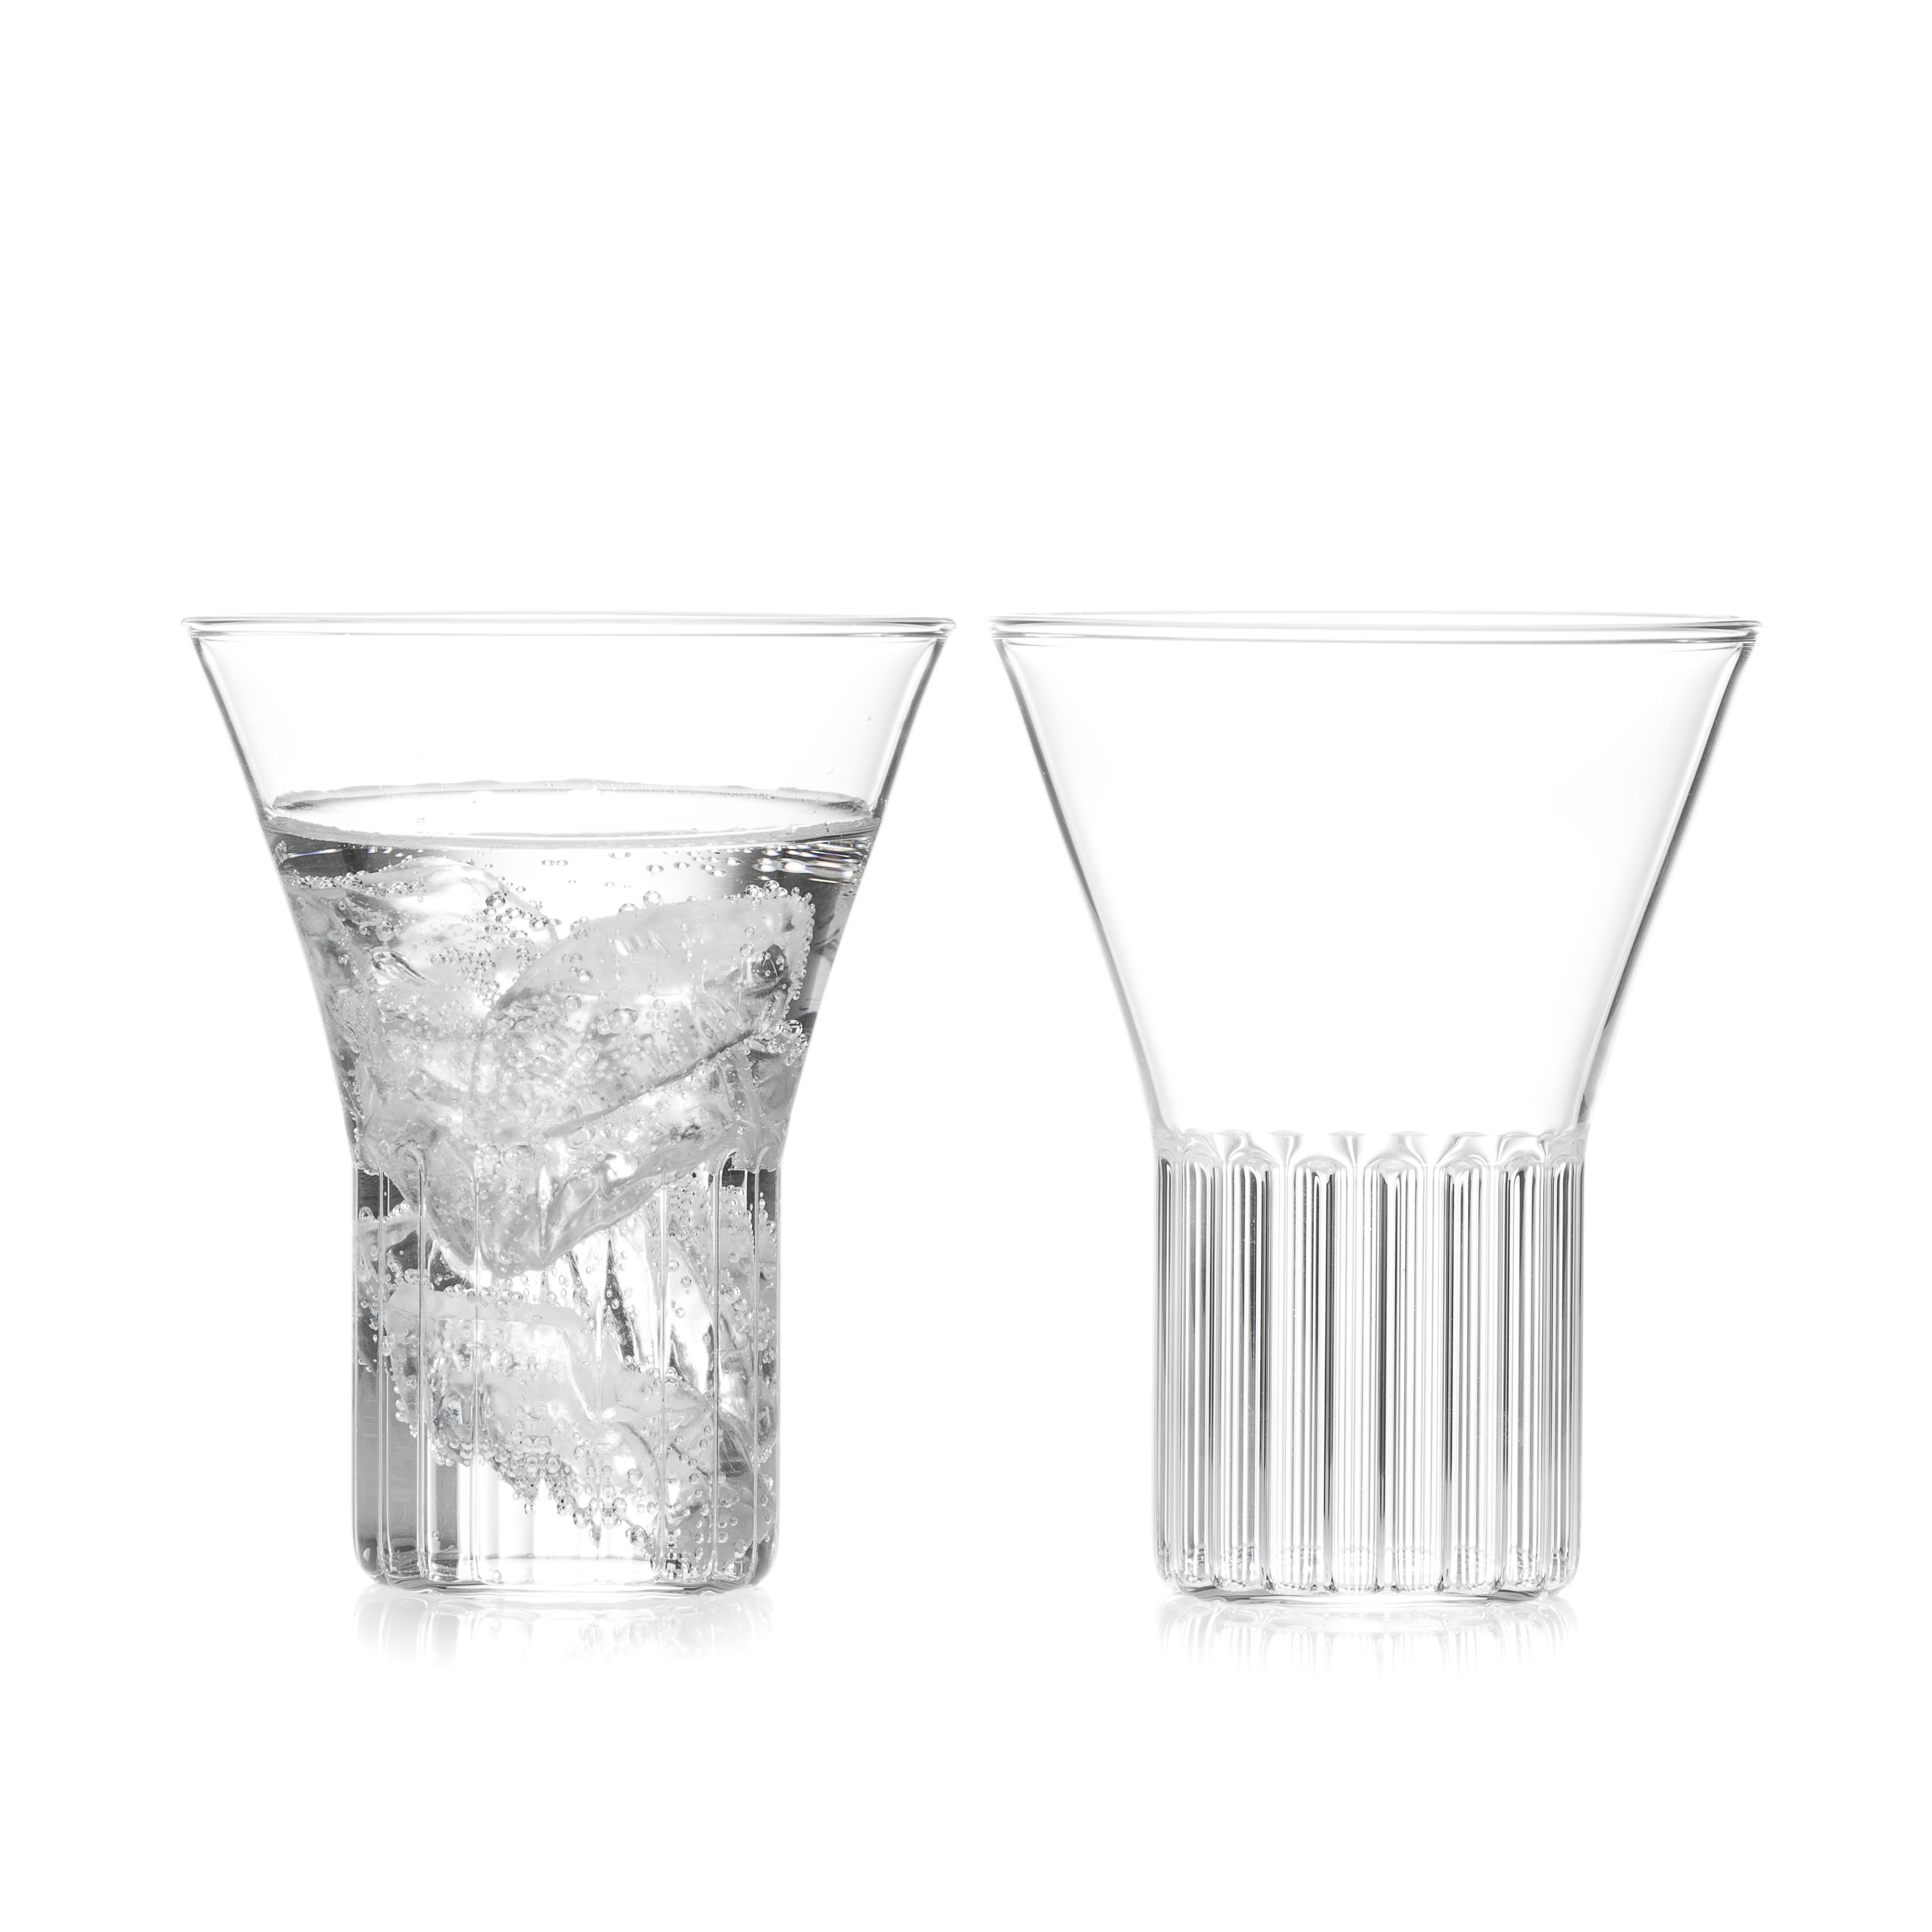 Rila medium Gläser, Satz mit zwei Gläsern.

Die vom Rila-Kloster inspirierte, klare und zeitgenössische tschechische Rila-Kollektion ist eine Serie von Gläsern, die sich ideal für Wein, Wasser, Martinis und andere Getränke eignen. Das moderne und